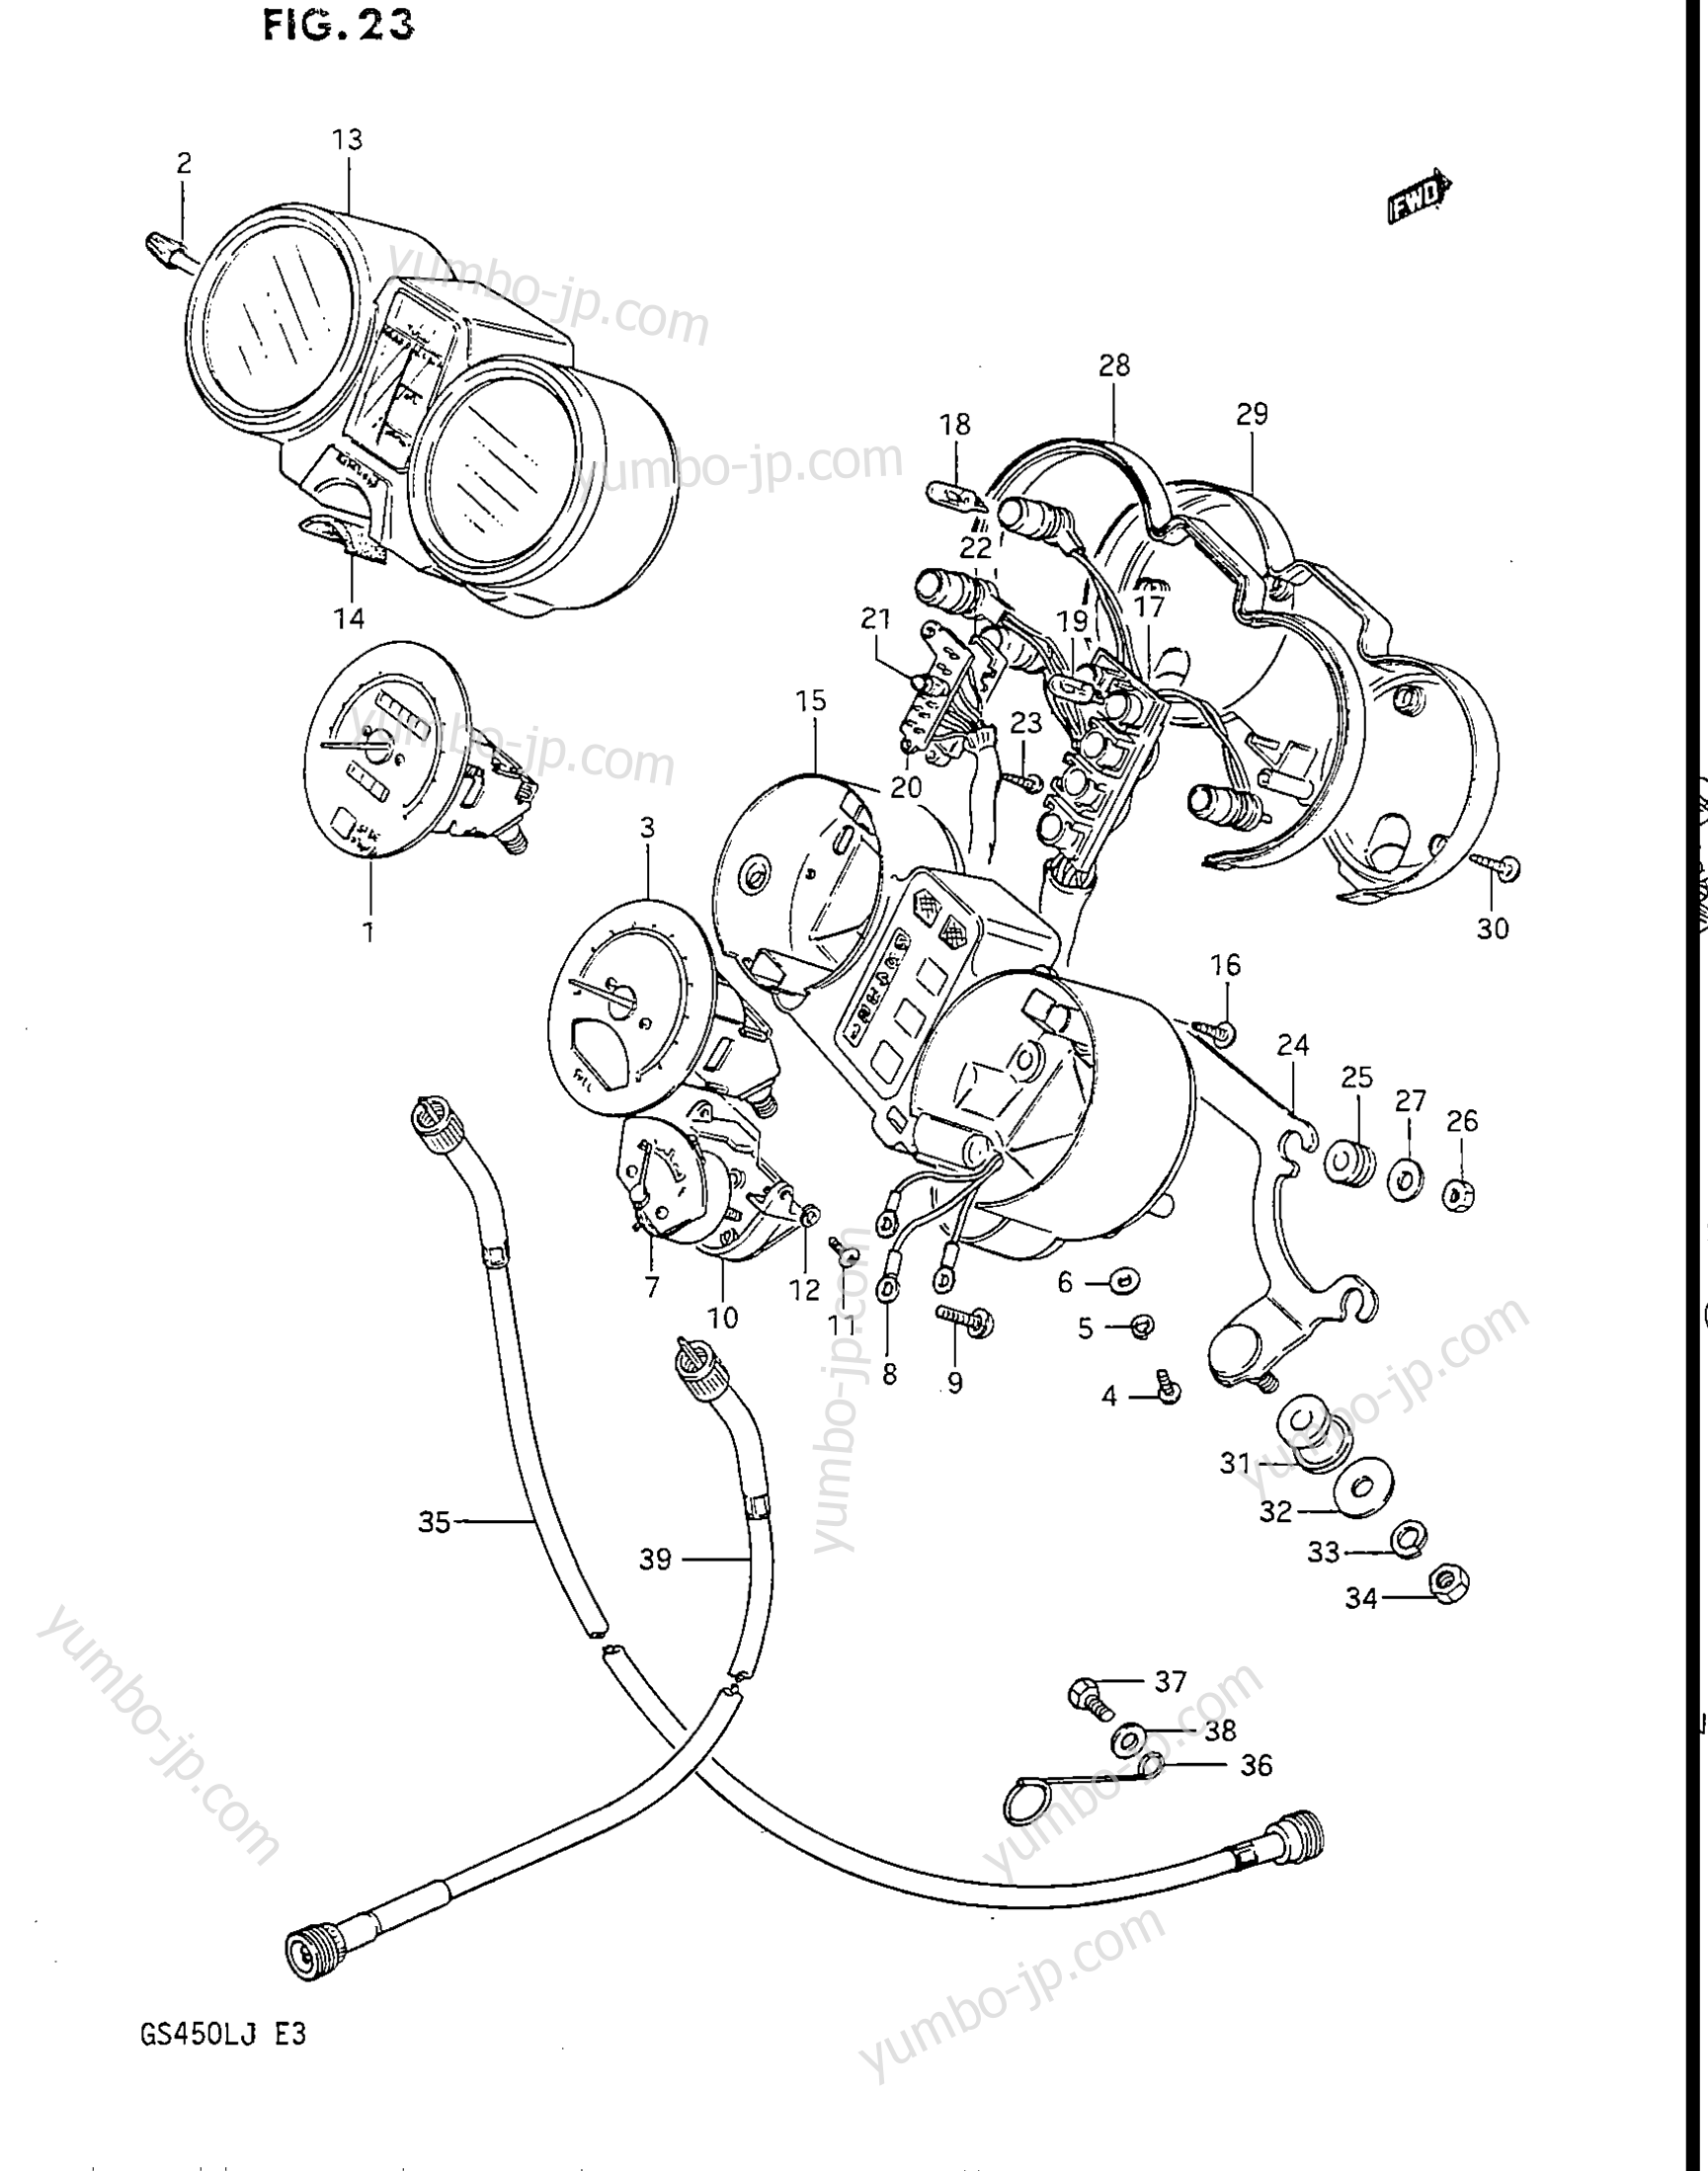 Speedometer - Tachometer for motorcycles SUZUKI GS450L 1987 year